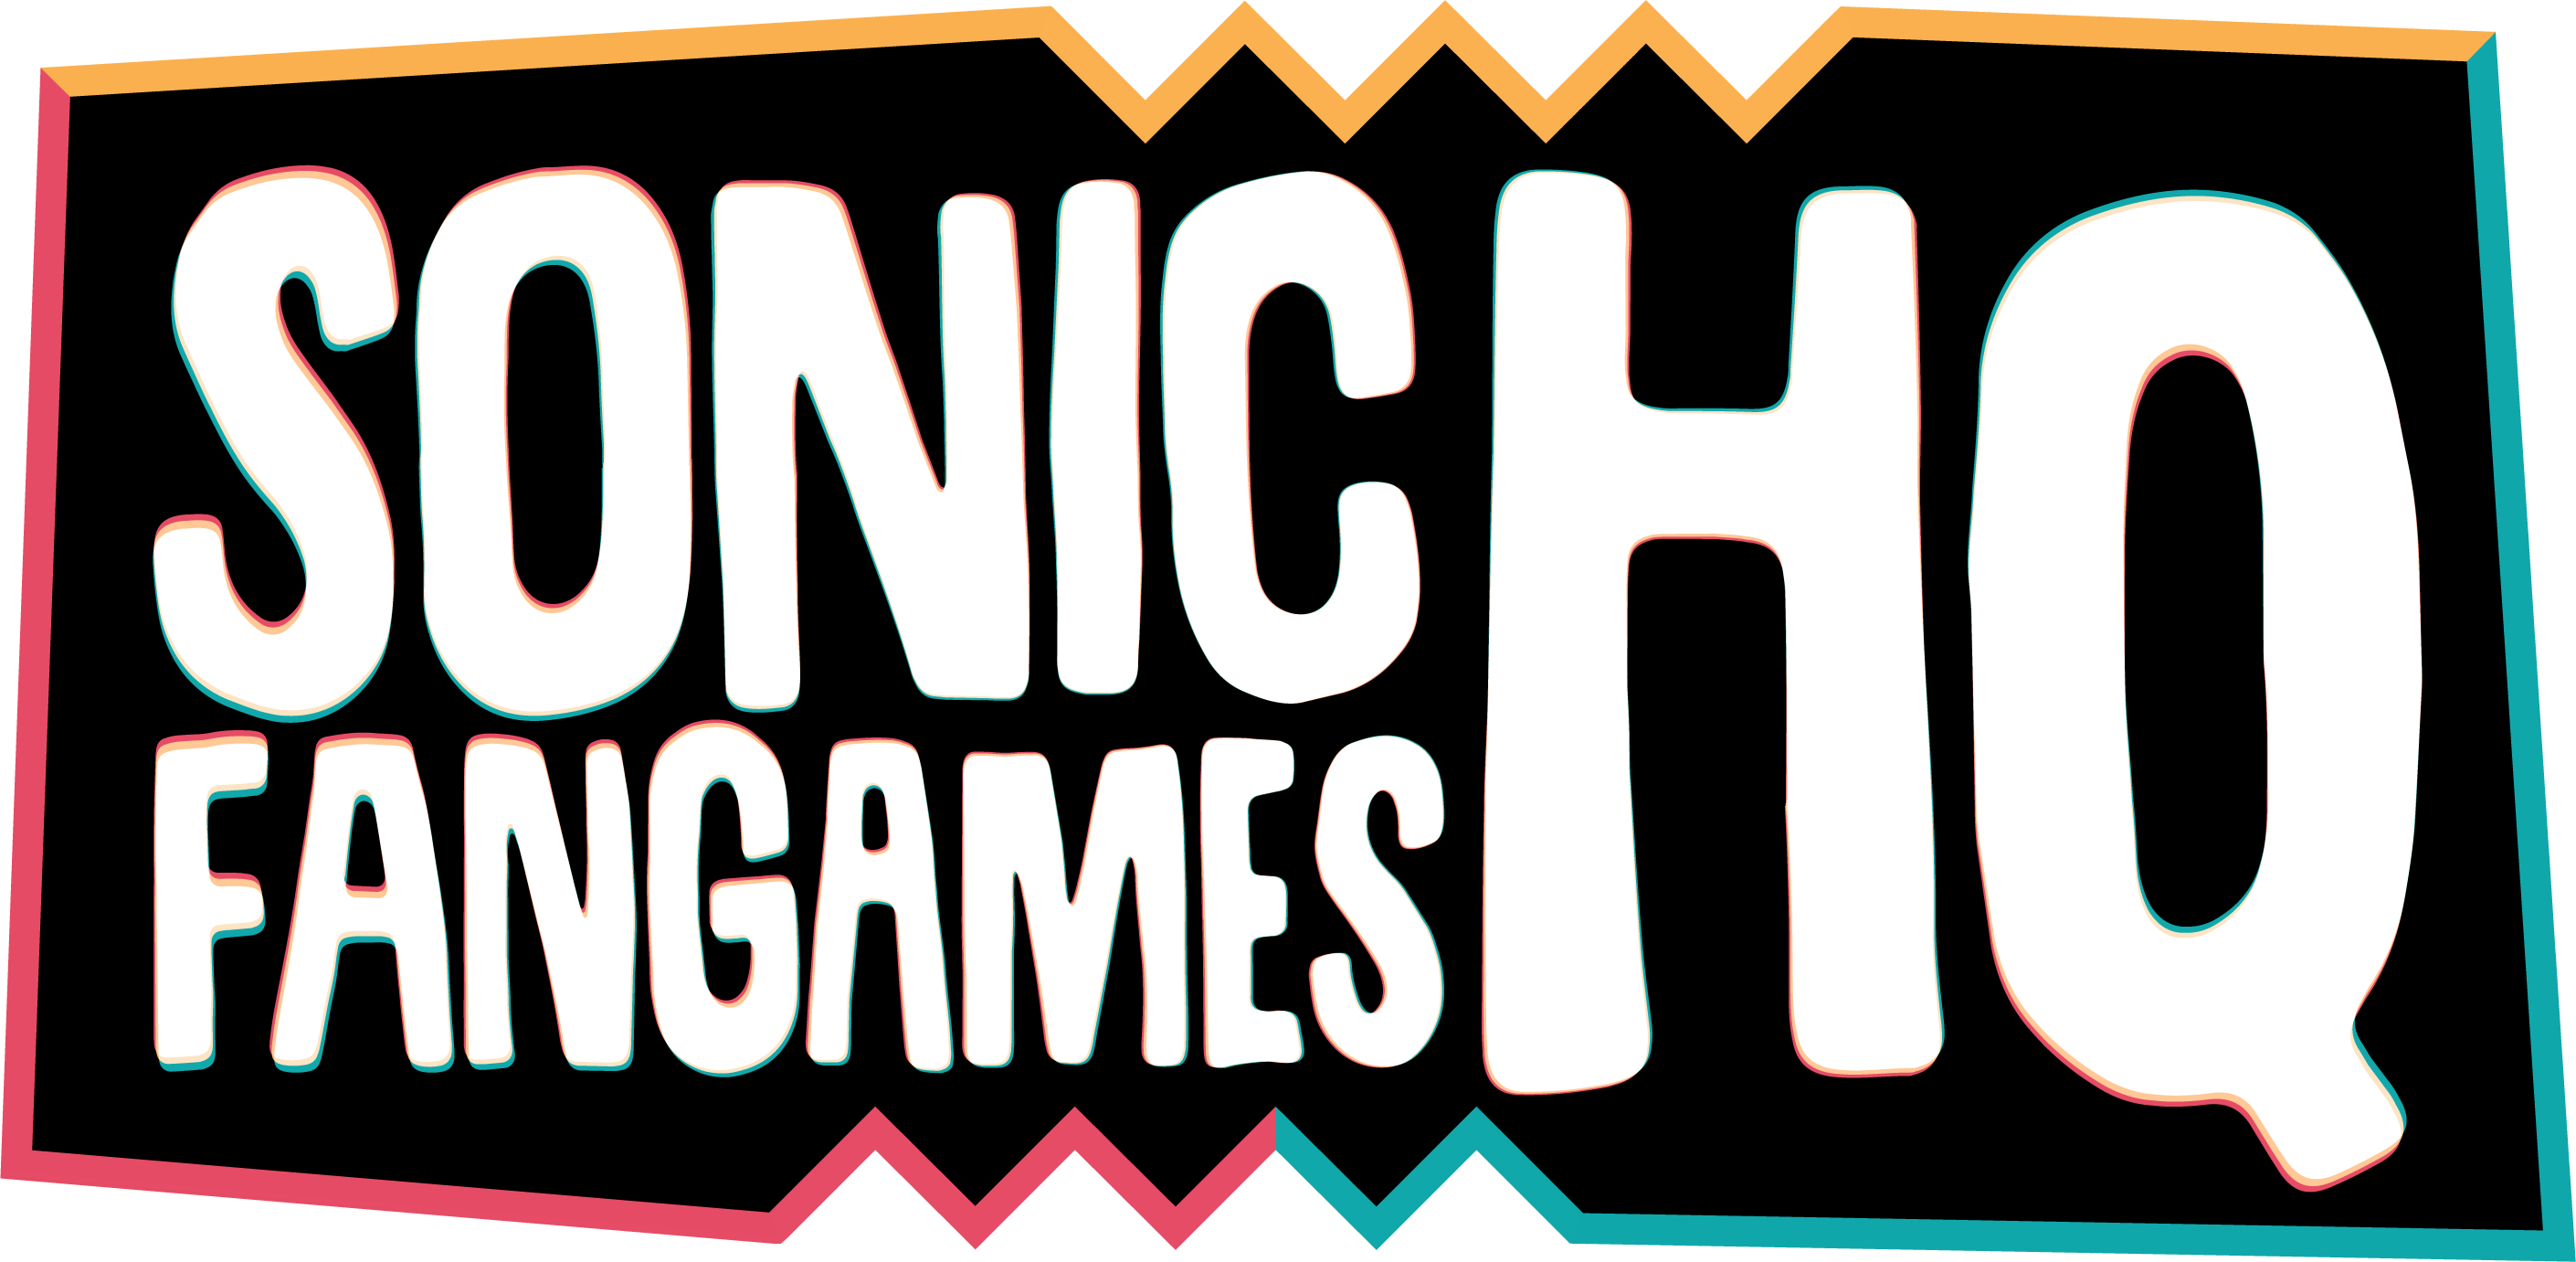 sonic fan 3d fan games